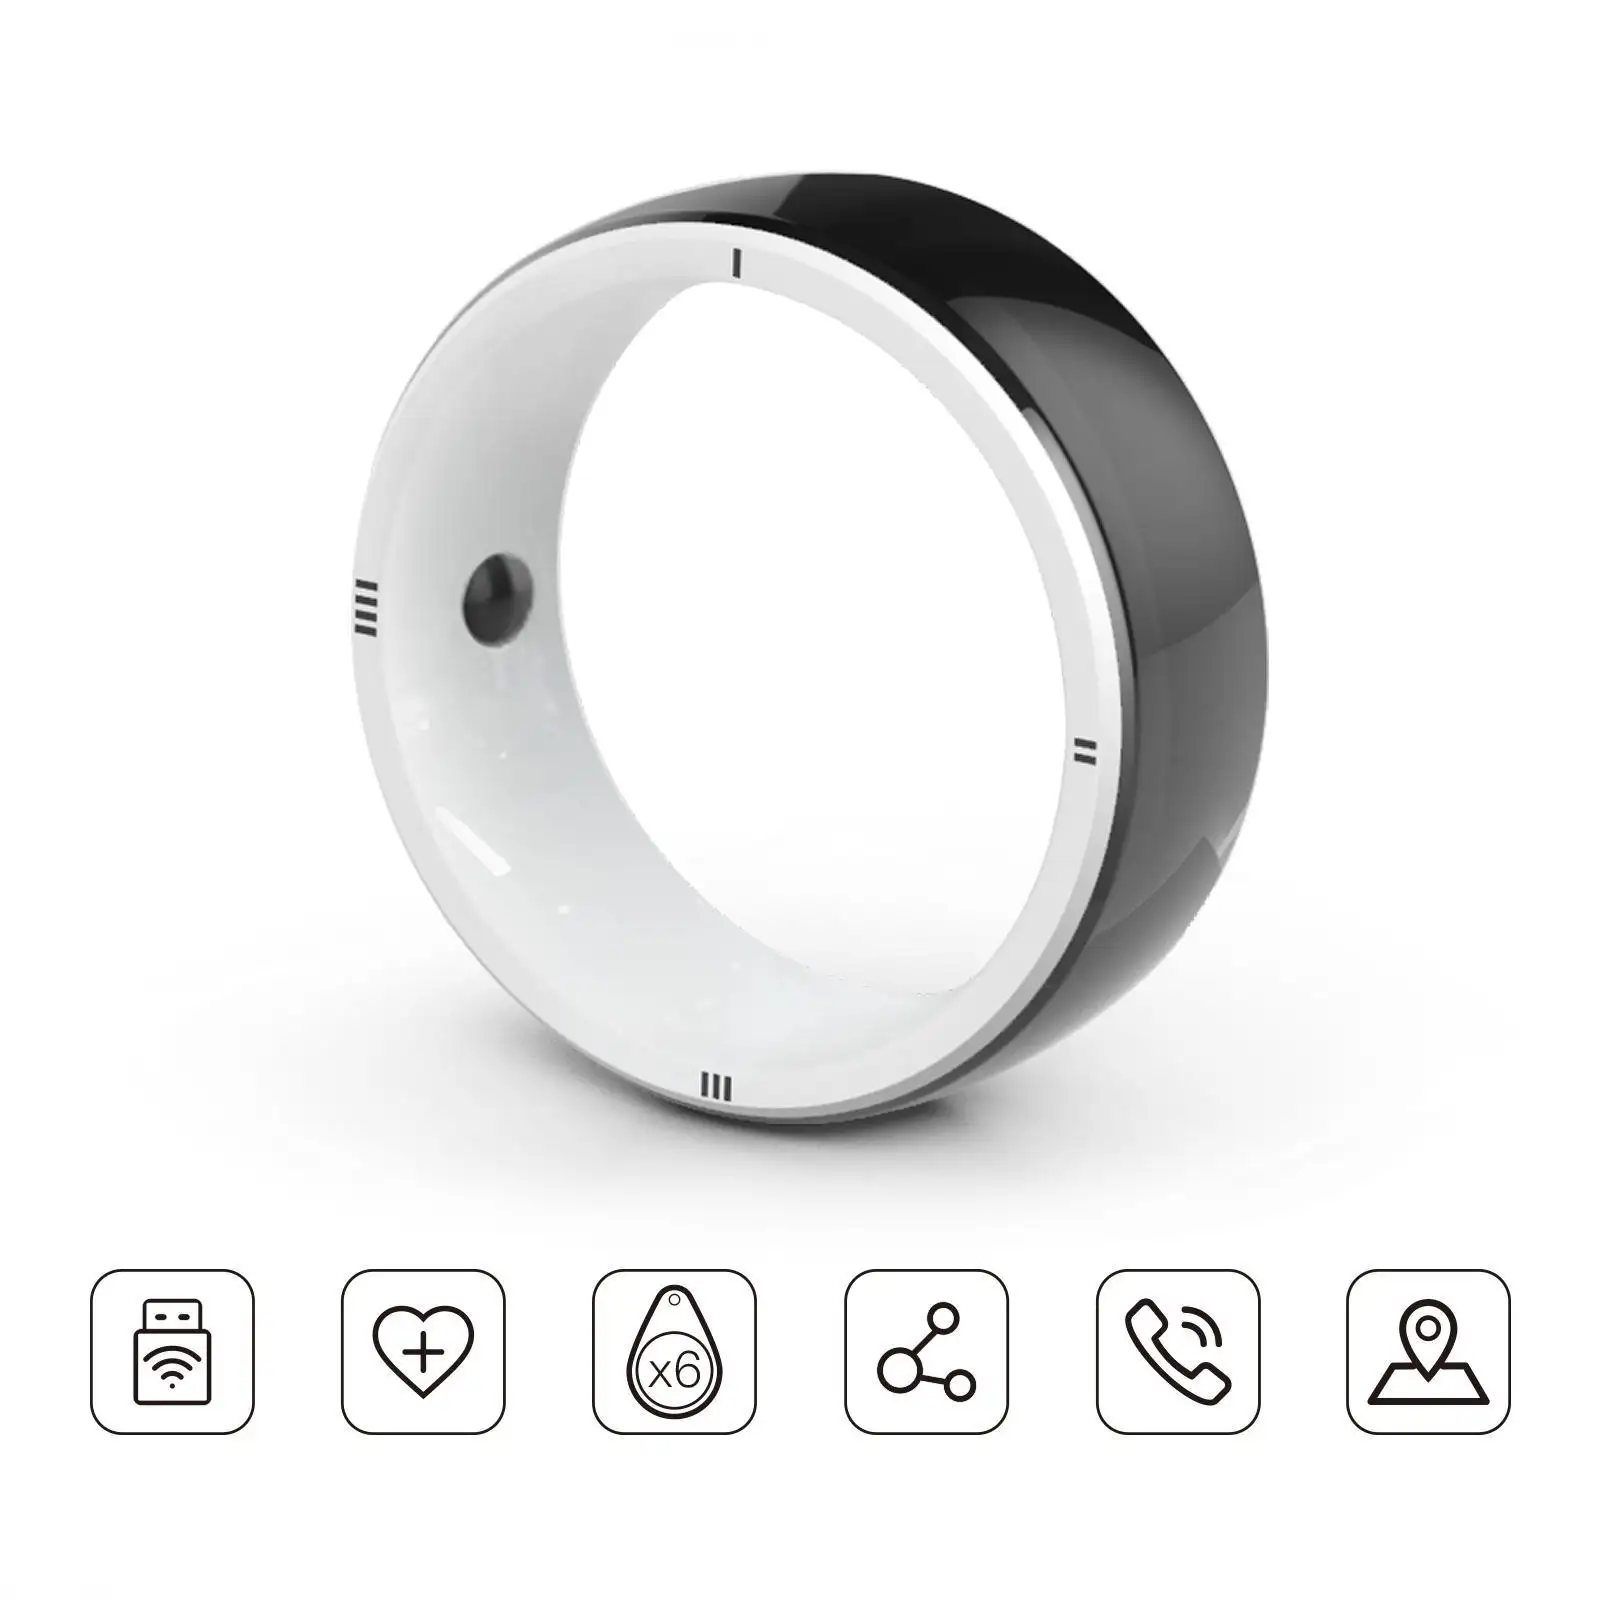 JAKCOM R5 cincin pintar baru cincin pintar bagus dari Terbaik pelindung layar penerimaan pembersih bintang 4g mobile 2019 gaming gpu putih